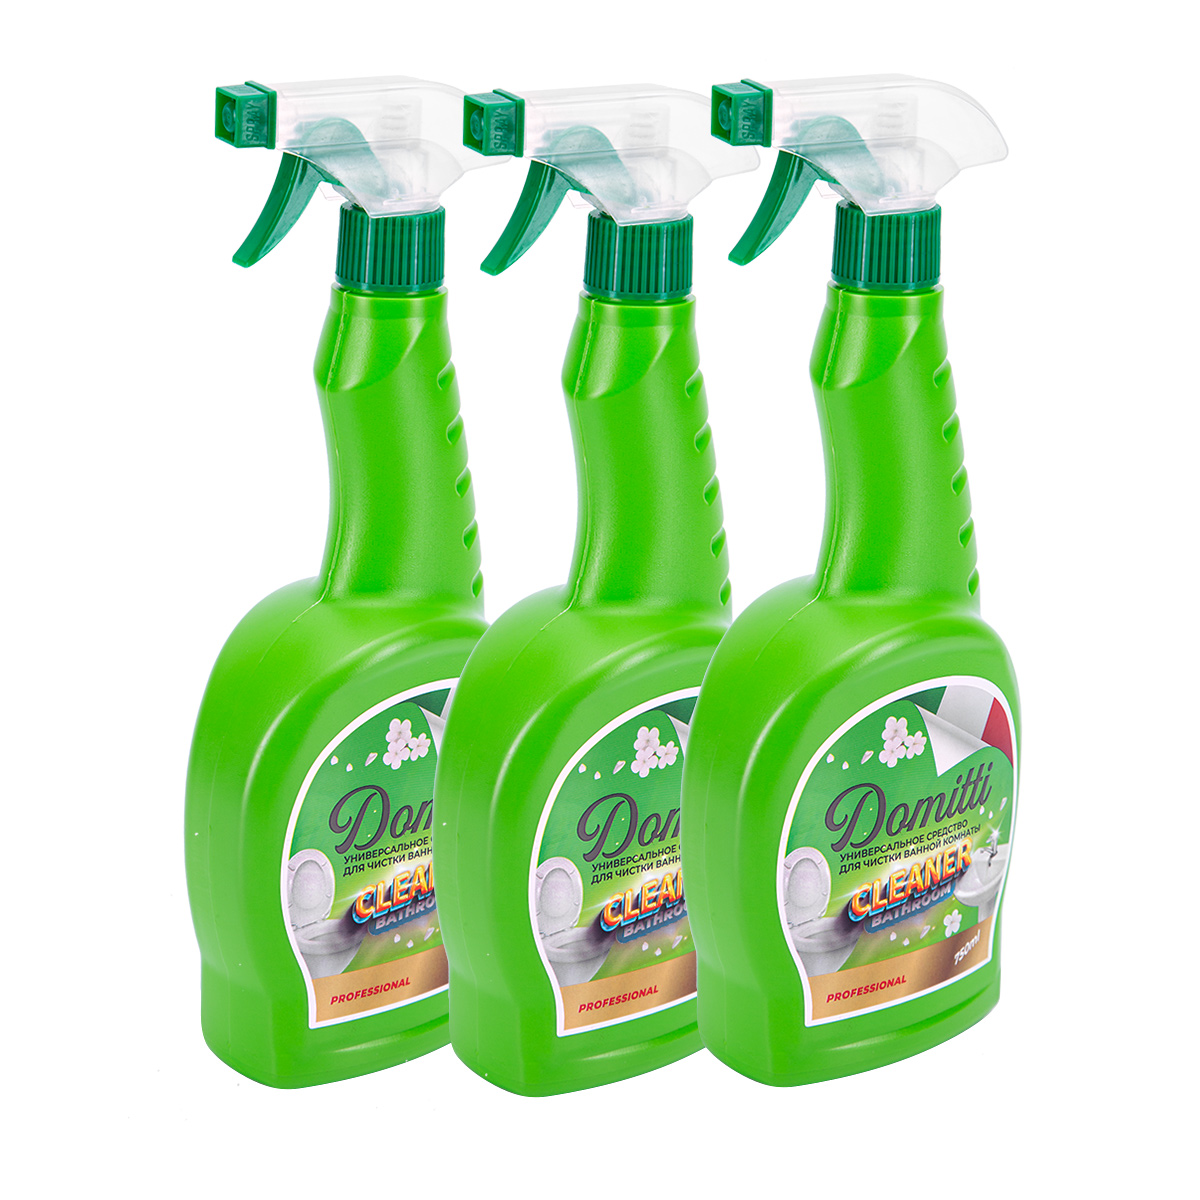 Универсальное средство для чистки ванной комнаты Domitti (3 шт.), Бытовая химия, Чистящие и моющие средства